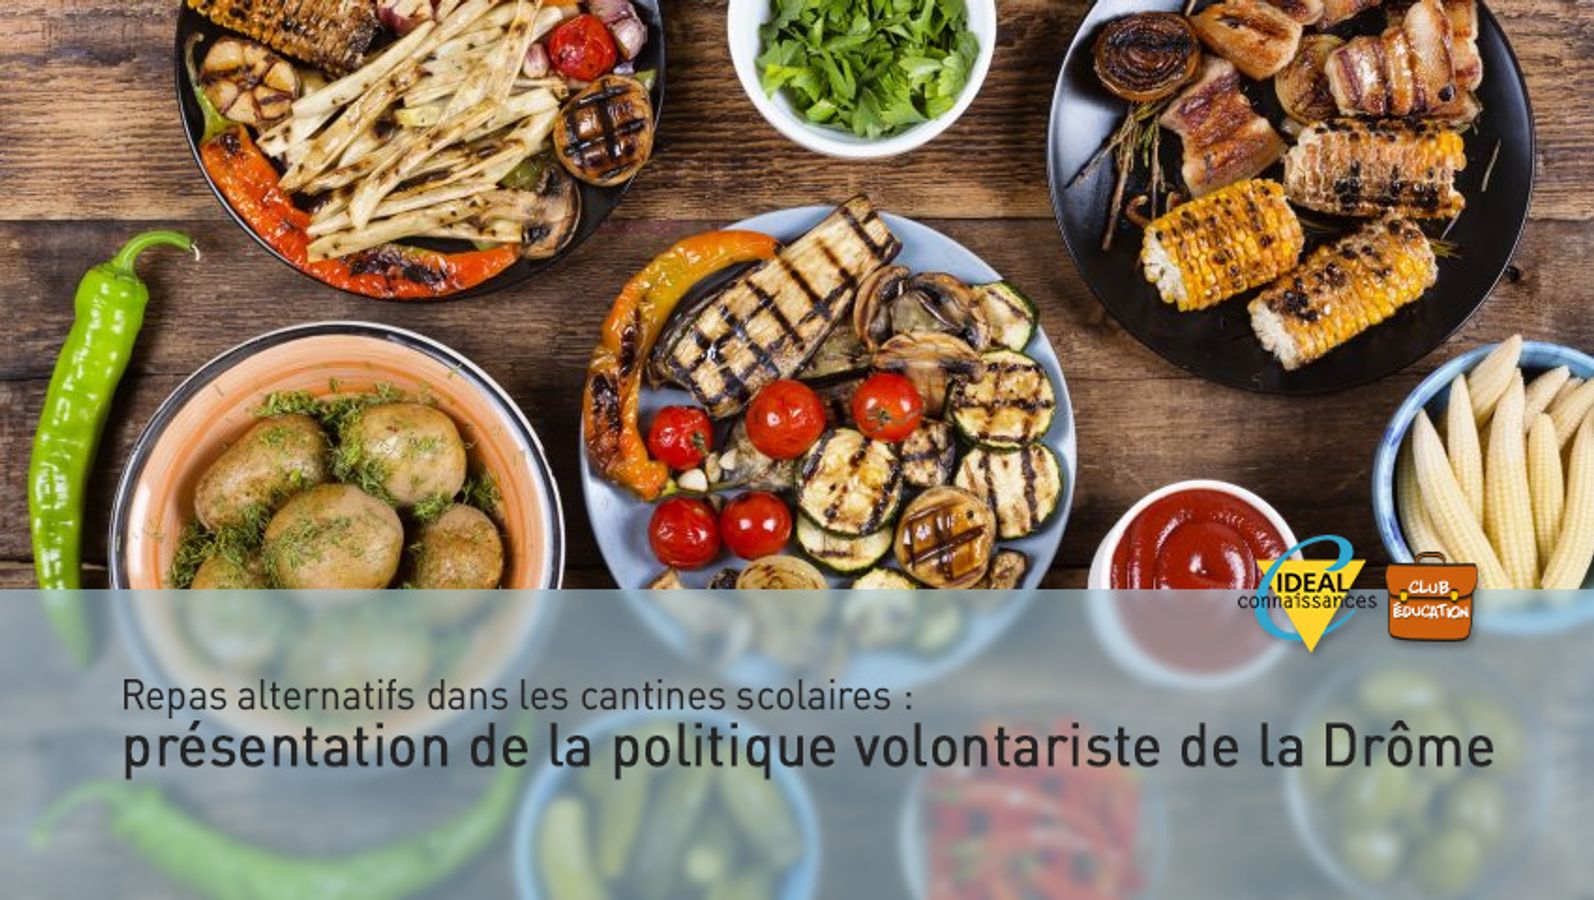 Repas alternatifs dans les cantines scolaires: présentation de la politique volontariste de la Drôme